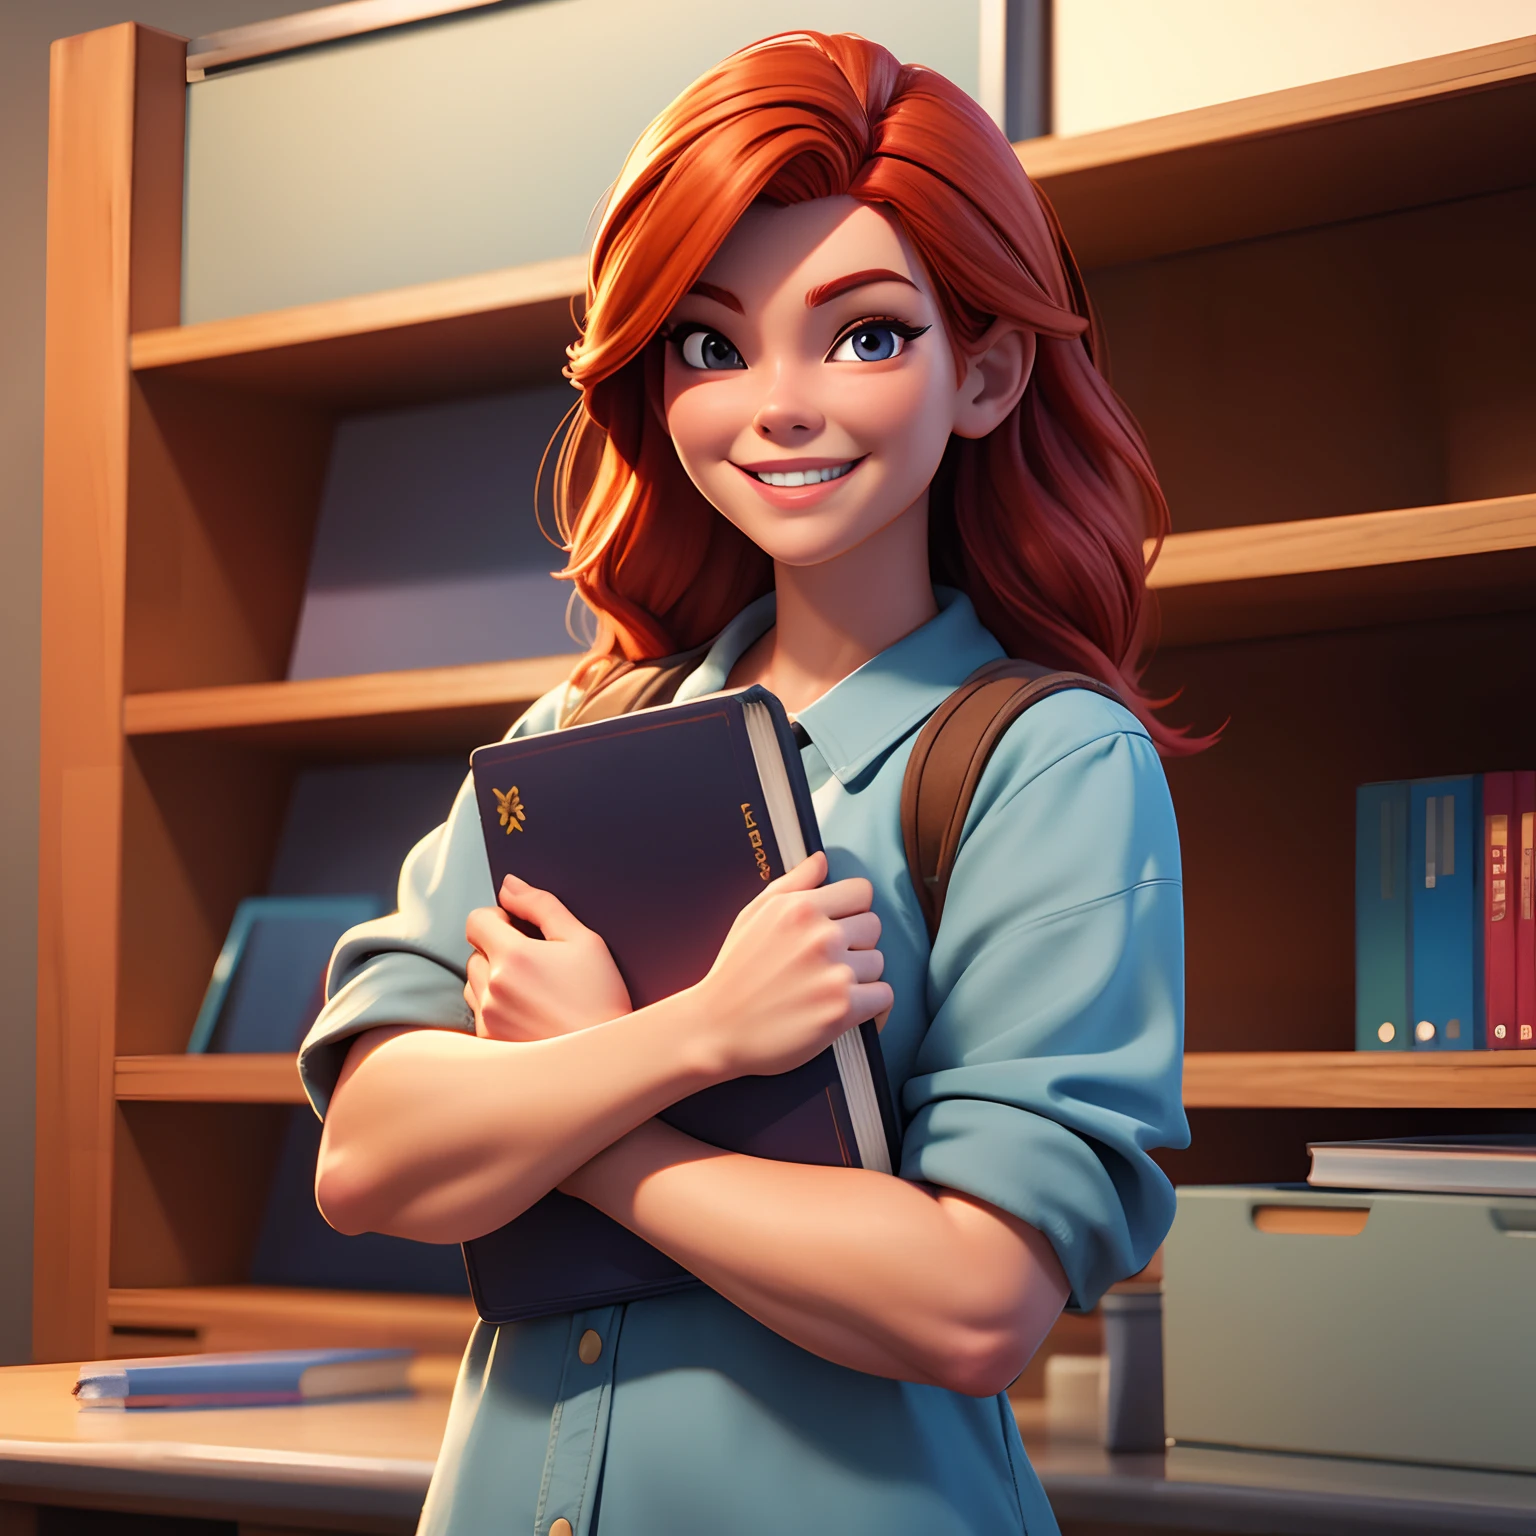 professora com cabelos ruivos, sorridente, segurando um livro, na escola, melhor qualidade, Realismo, 3d